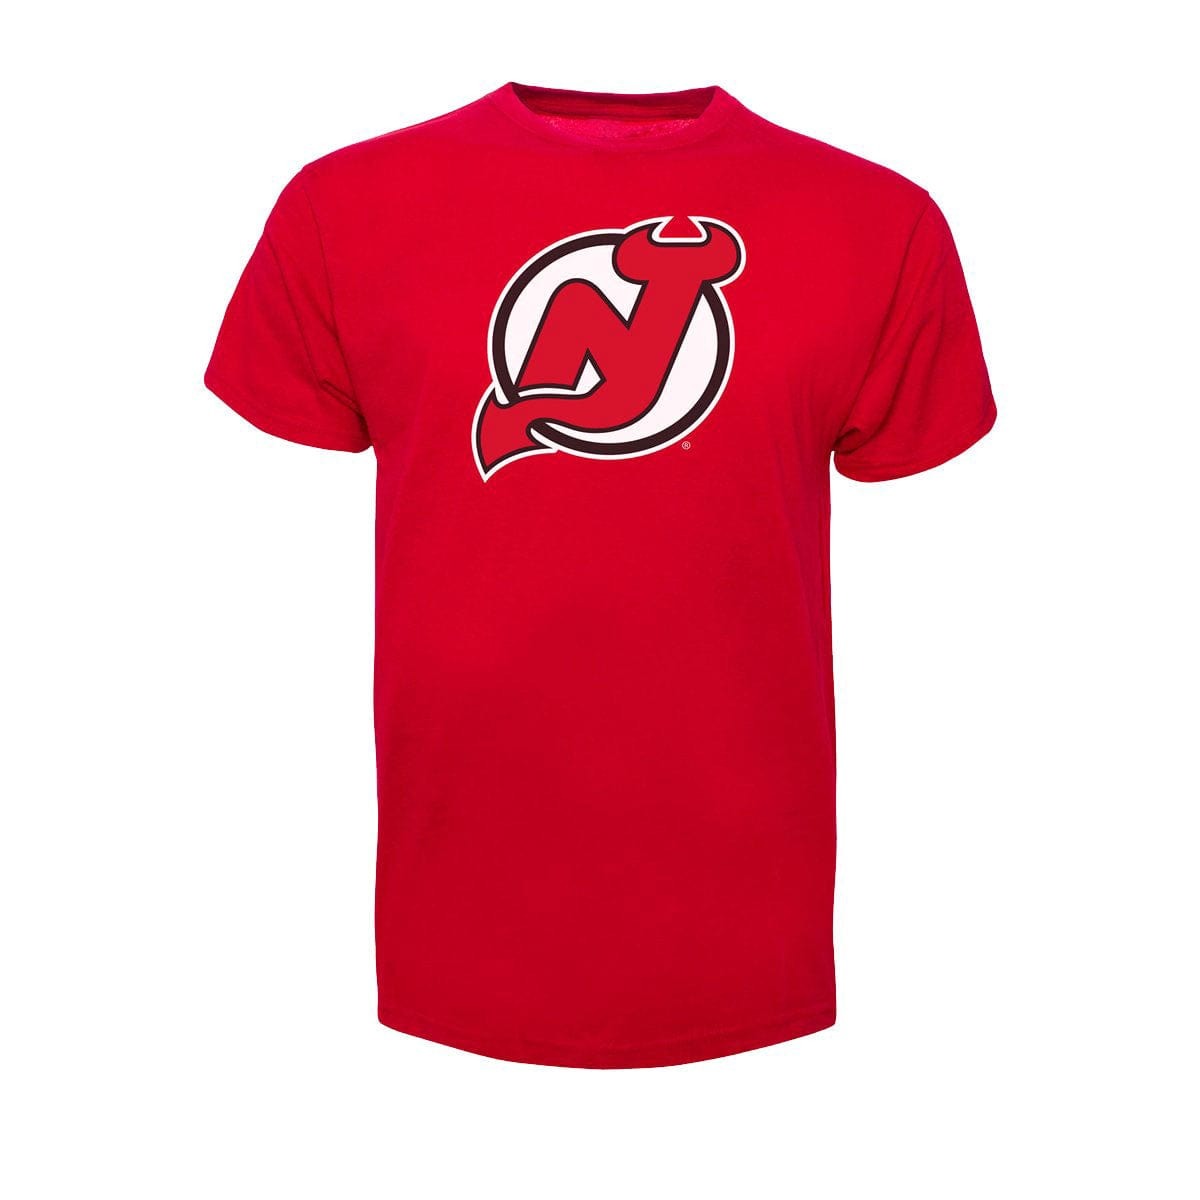 New Jersey Devils 47 Brand Fan Tee Shirt